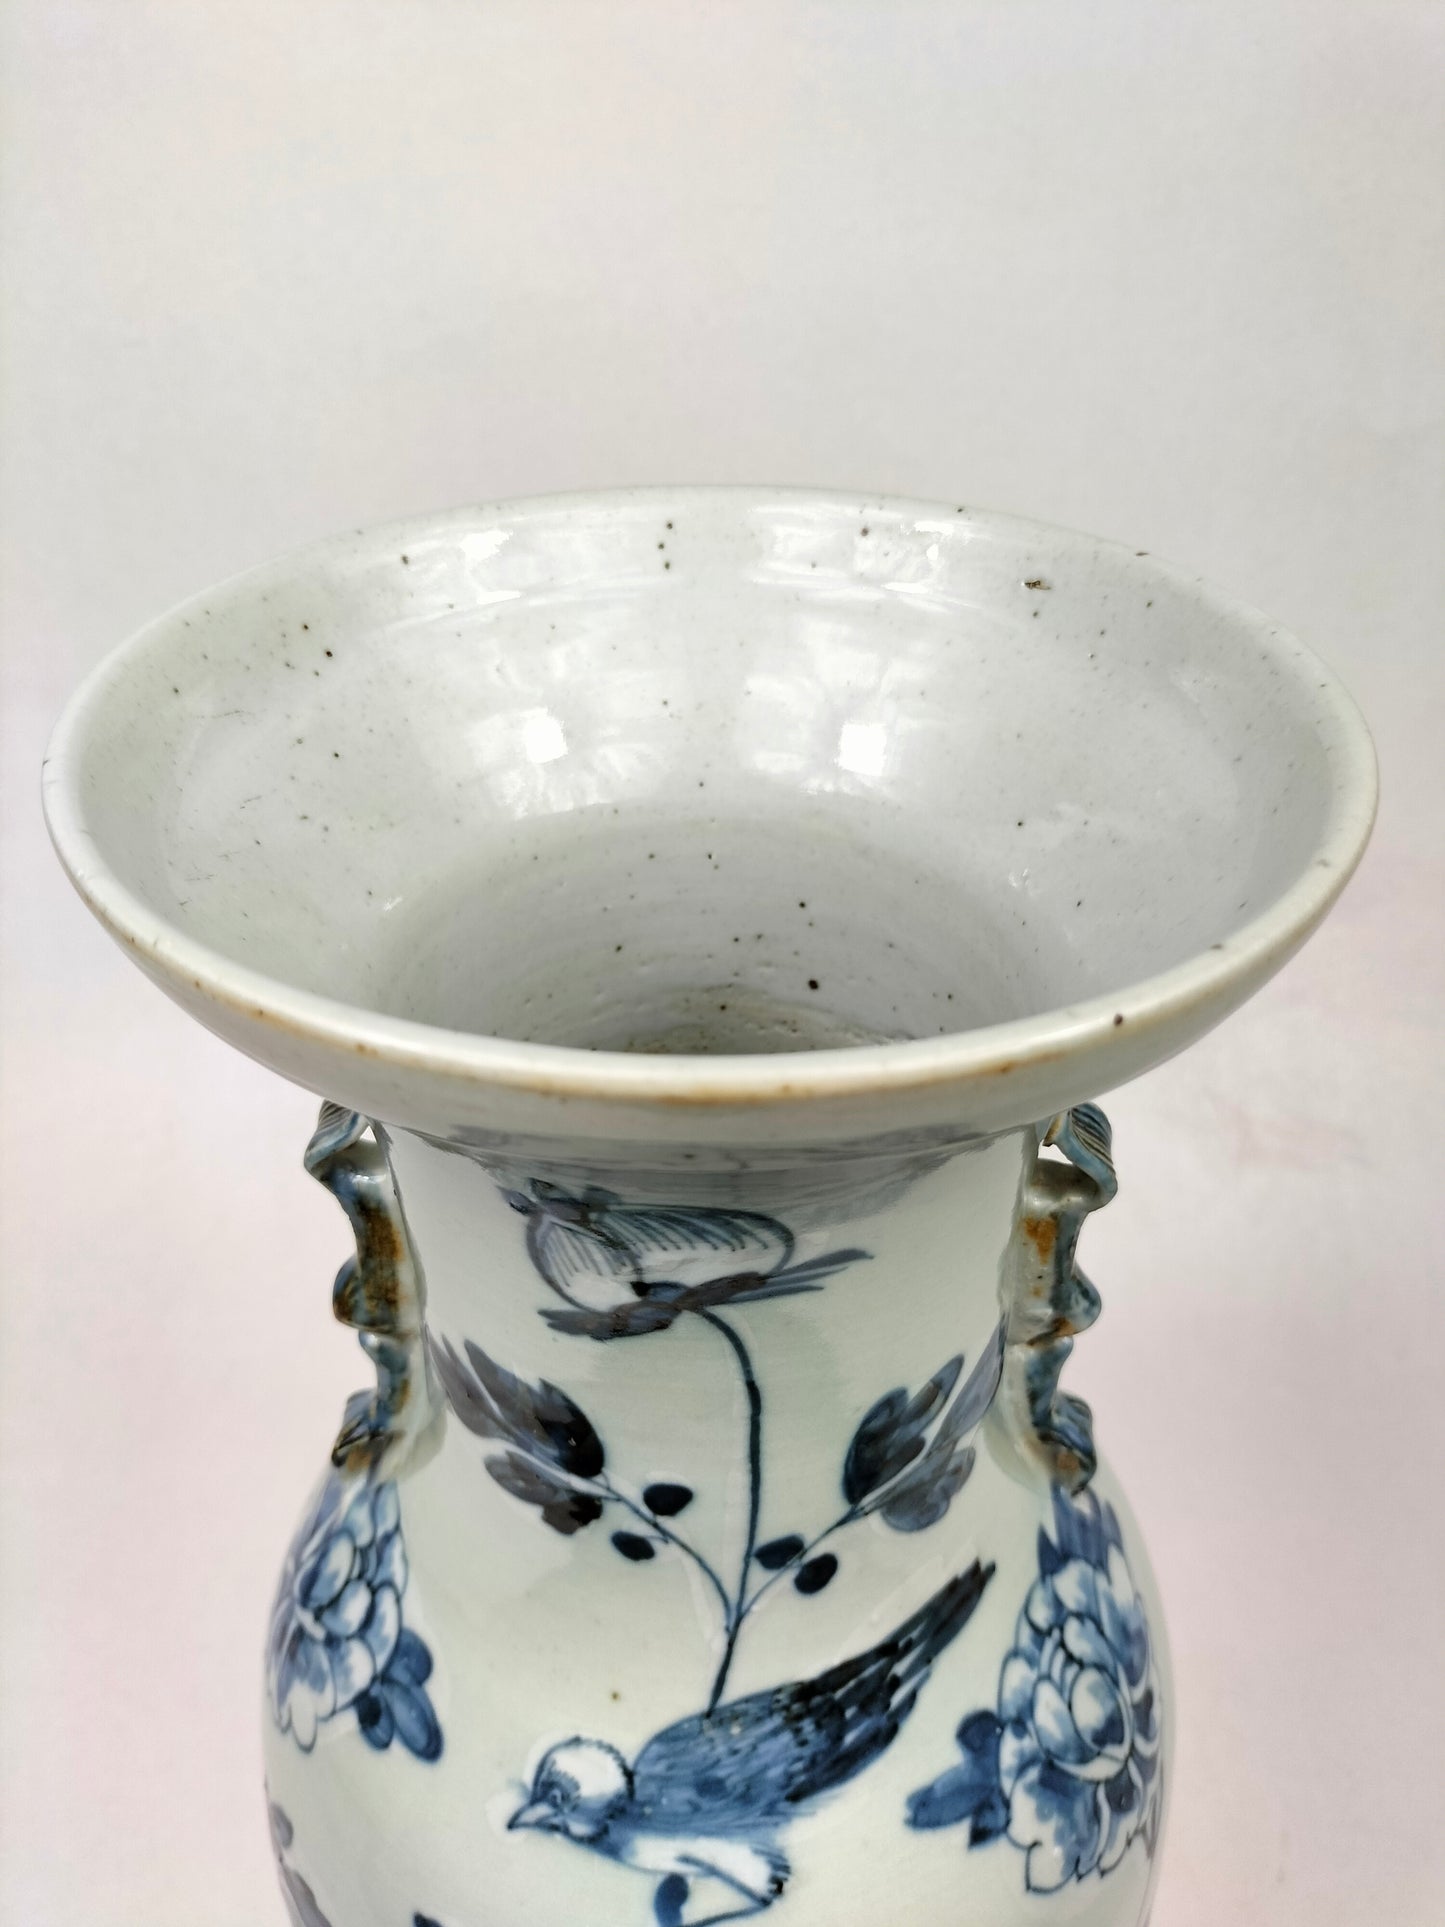 Bình men ngọc cổ Trung Quốc được trang trí hình chim và hoa // Nhà Thanh - thế kỷ 19